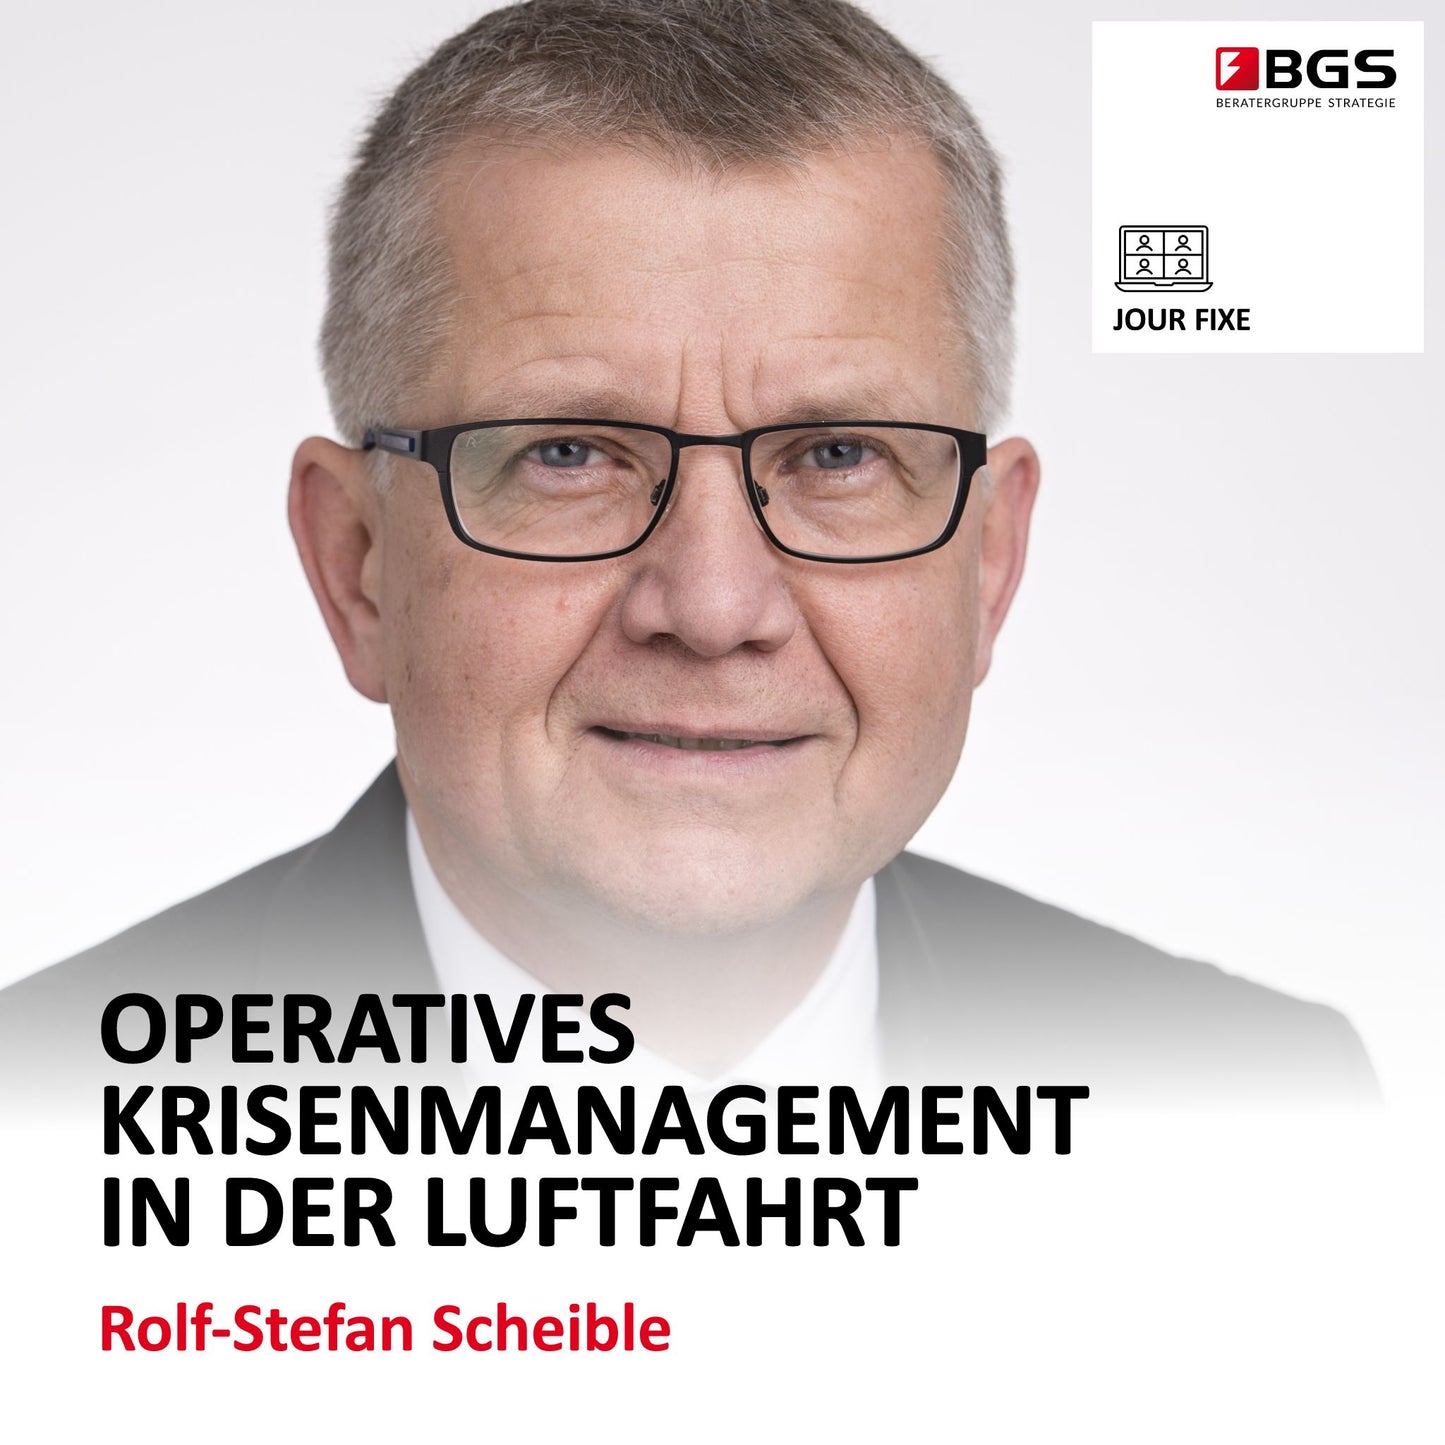 VORTRAG: „Operatives Krisenmanagement in der Luftfahrt“ | Rolf-Stefan Scheible | foliofive crisis management GmbH